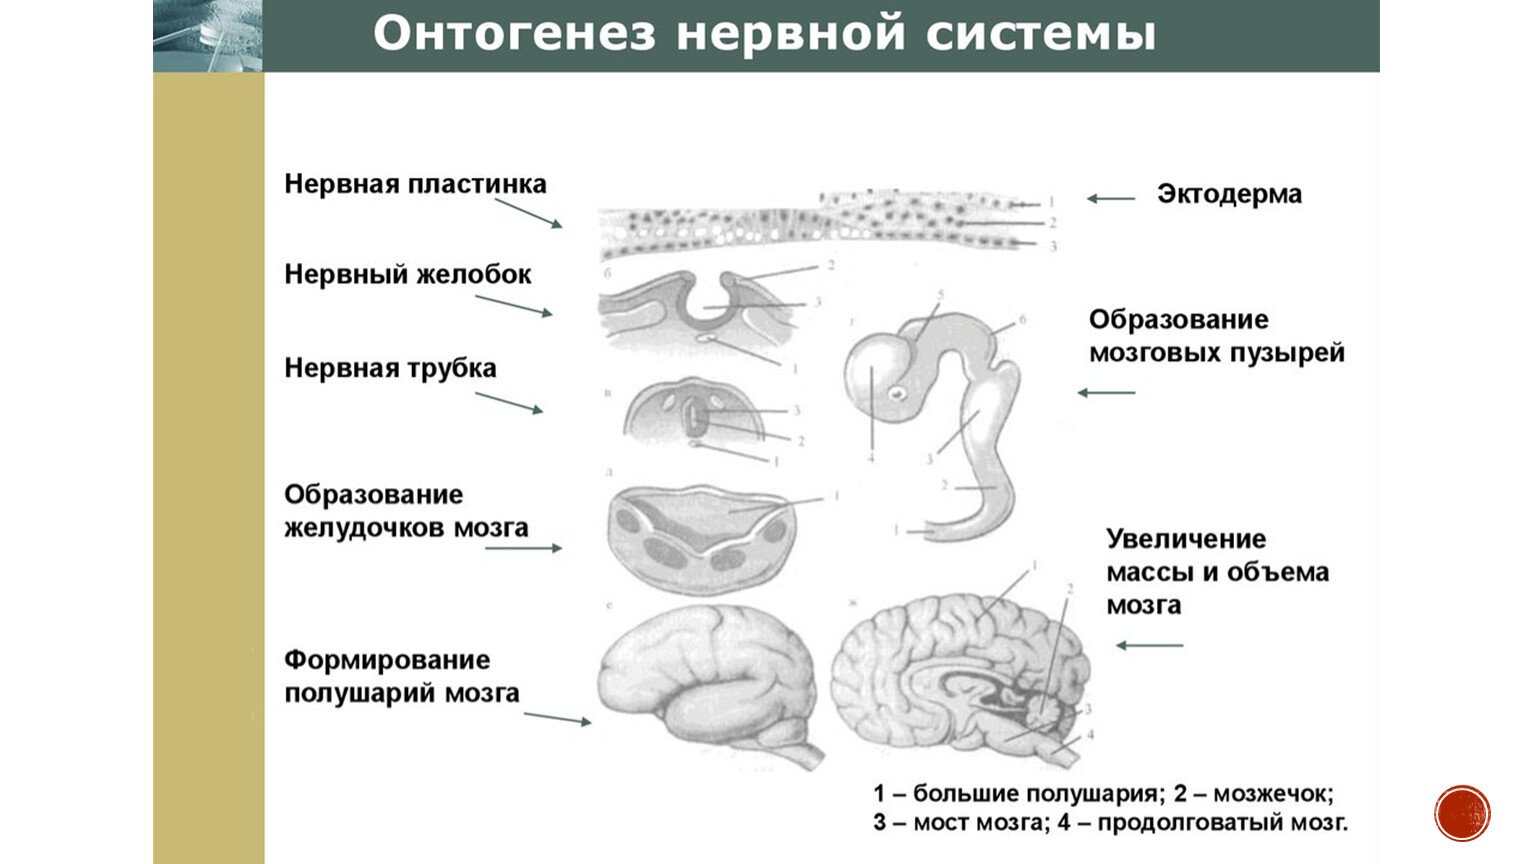 Эмбриогенез мозга человека. Основные этапы онтогенеза центральной нервной системы человека. Развитие нервной системы в онтогенезе таблица. Основные этапы онтогенеза нервной системы схематично. Онтогенез нервной системы стадии развития.